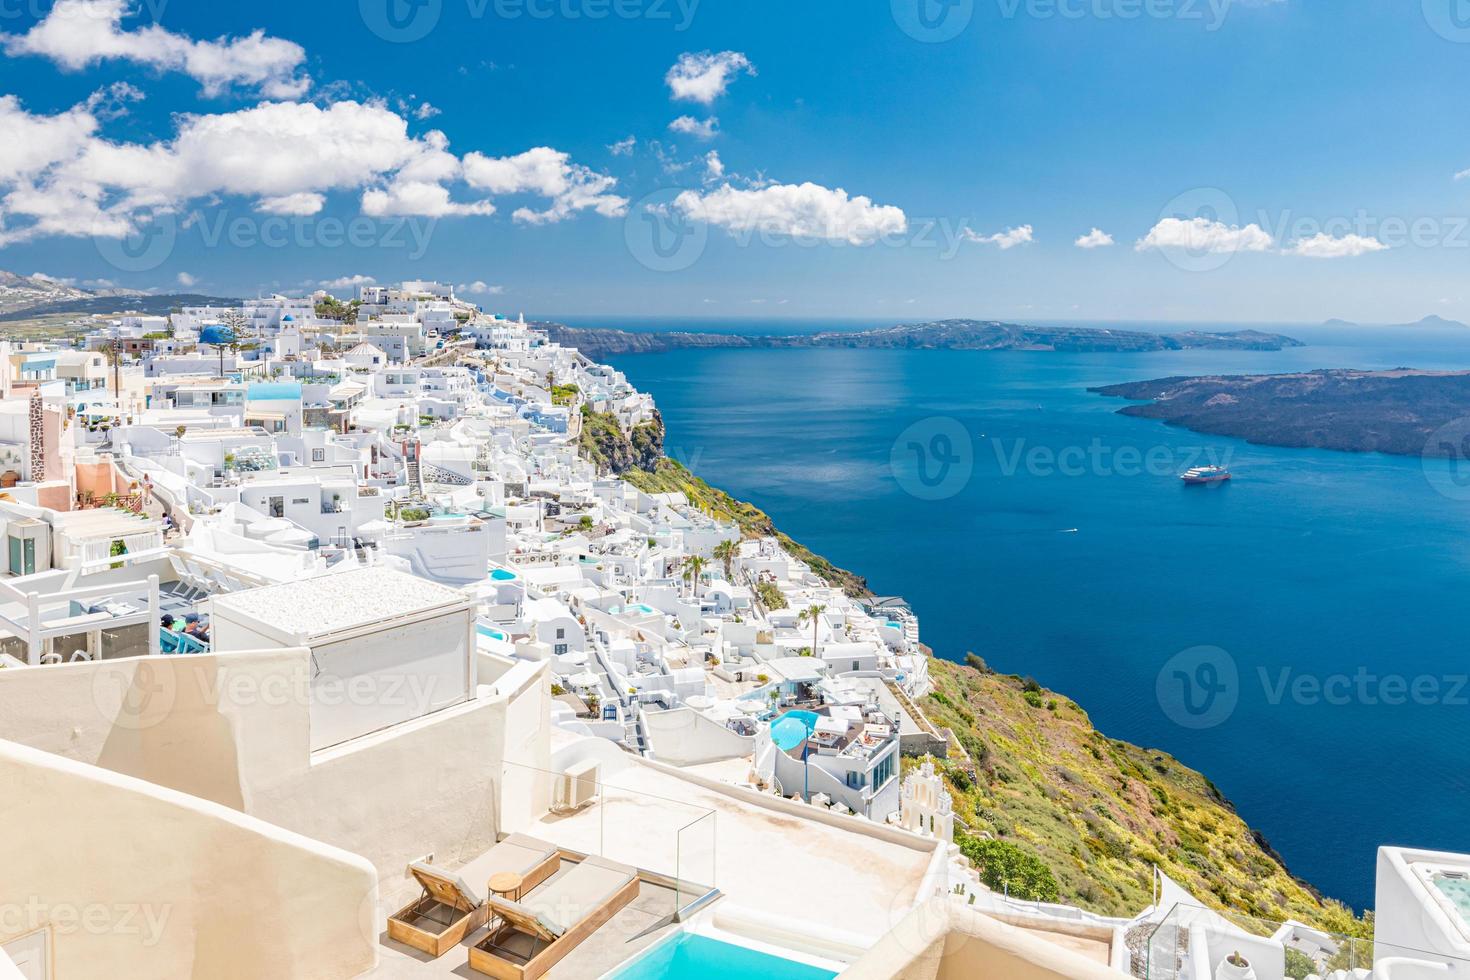 architettura bianca sull'isola di santorini, in grecia. piscina in hotel di lusso. bella vista, cielo sul mare blu. vacanze estive e vacanze come concetto di destinazione di viaggio, incredibile sfondo turistico foto